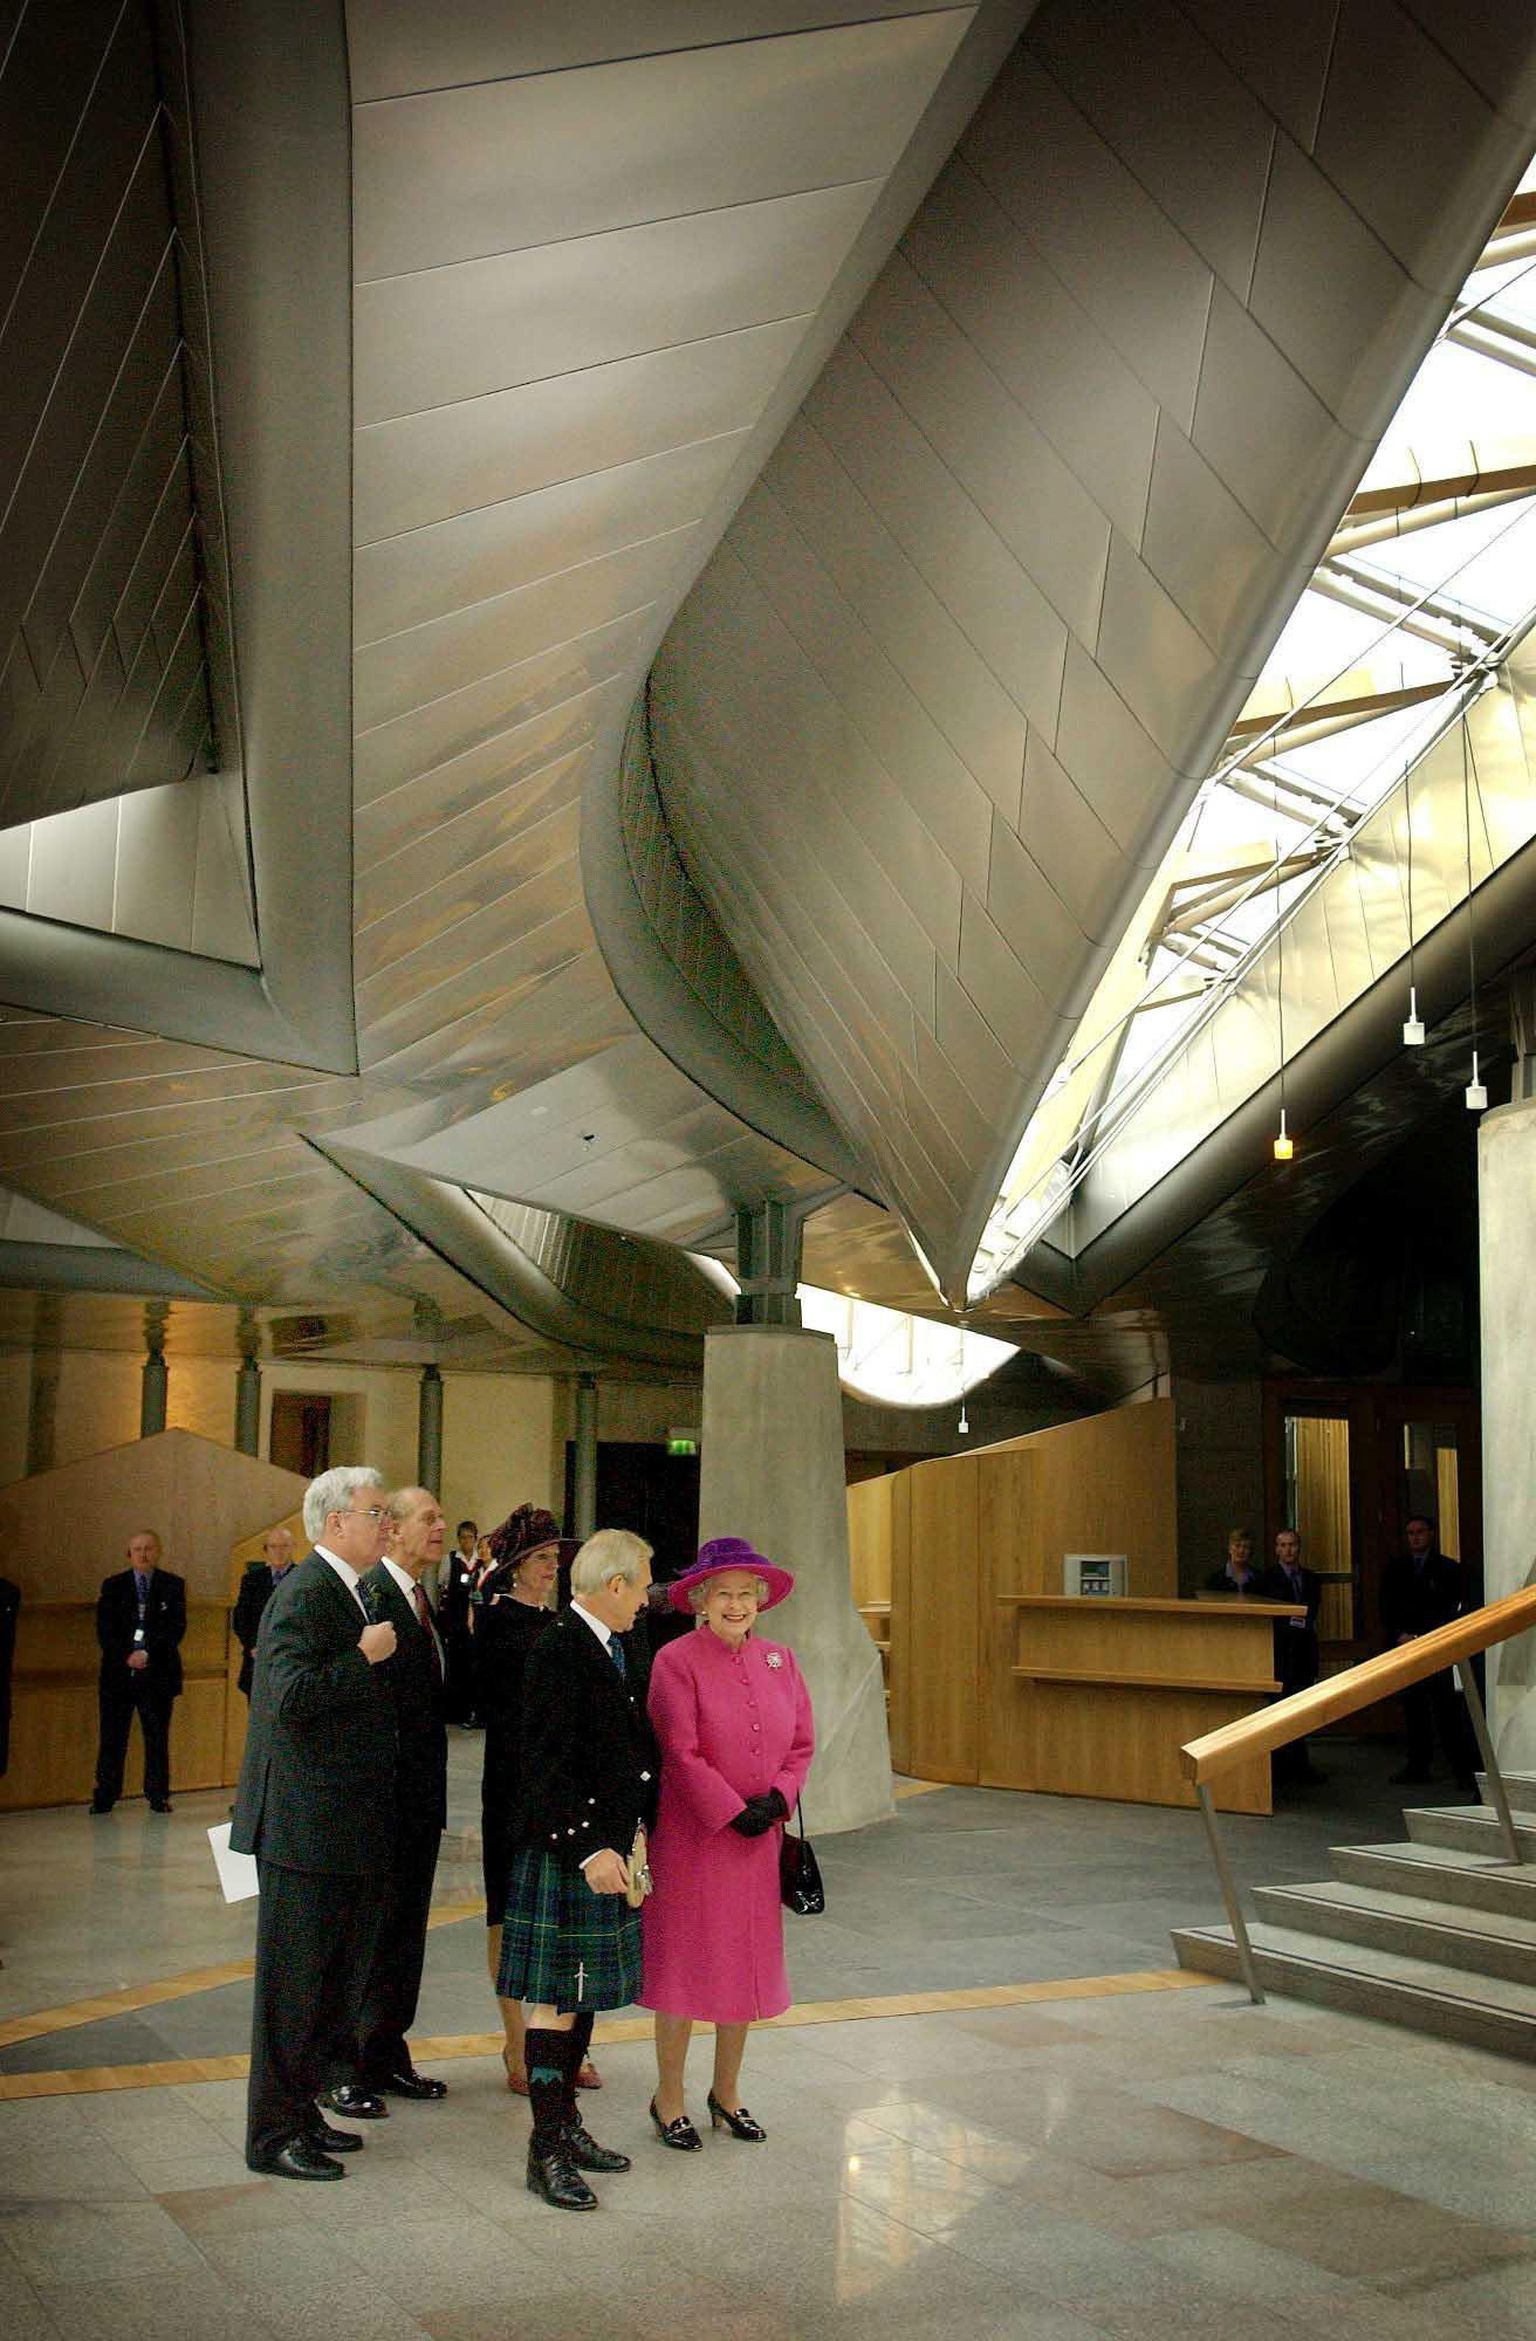 Kuninganna Elizabeth II Šotimaa parlamendihoone avamisel.